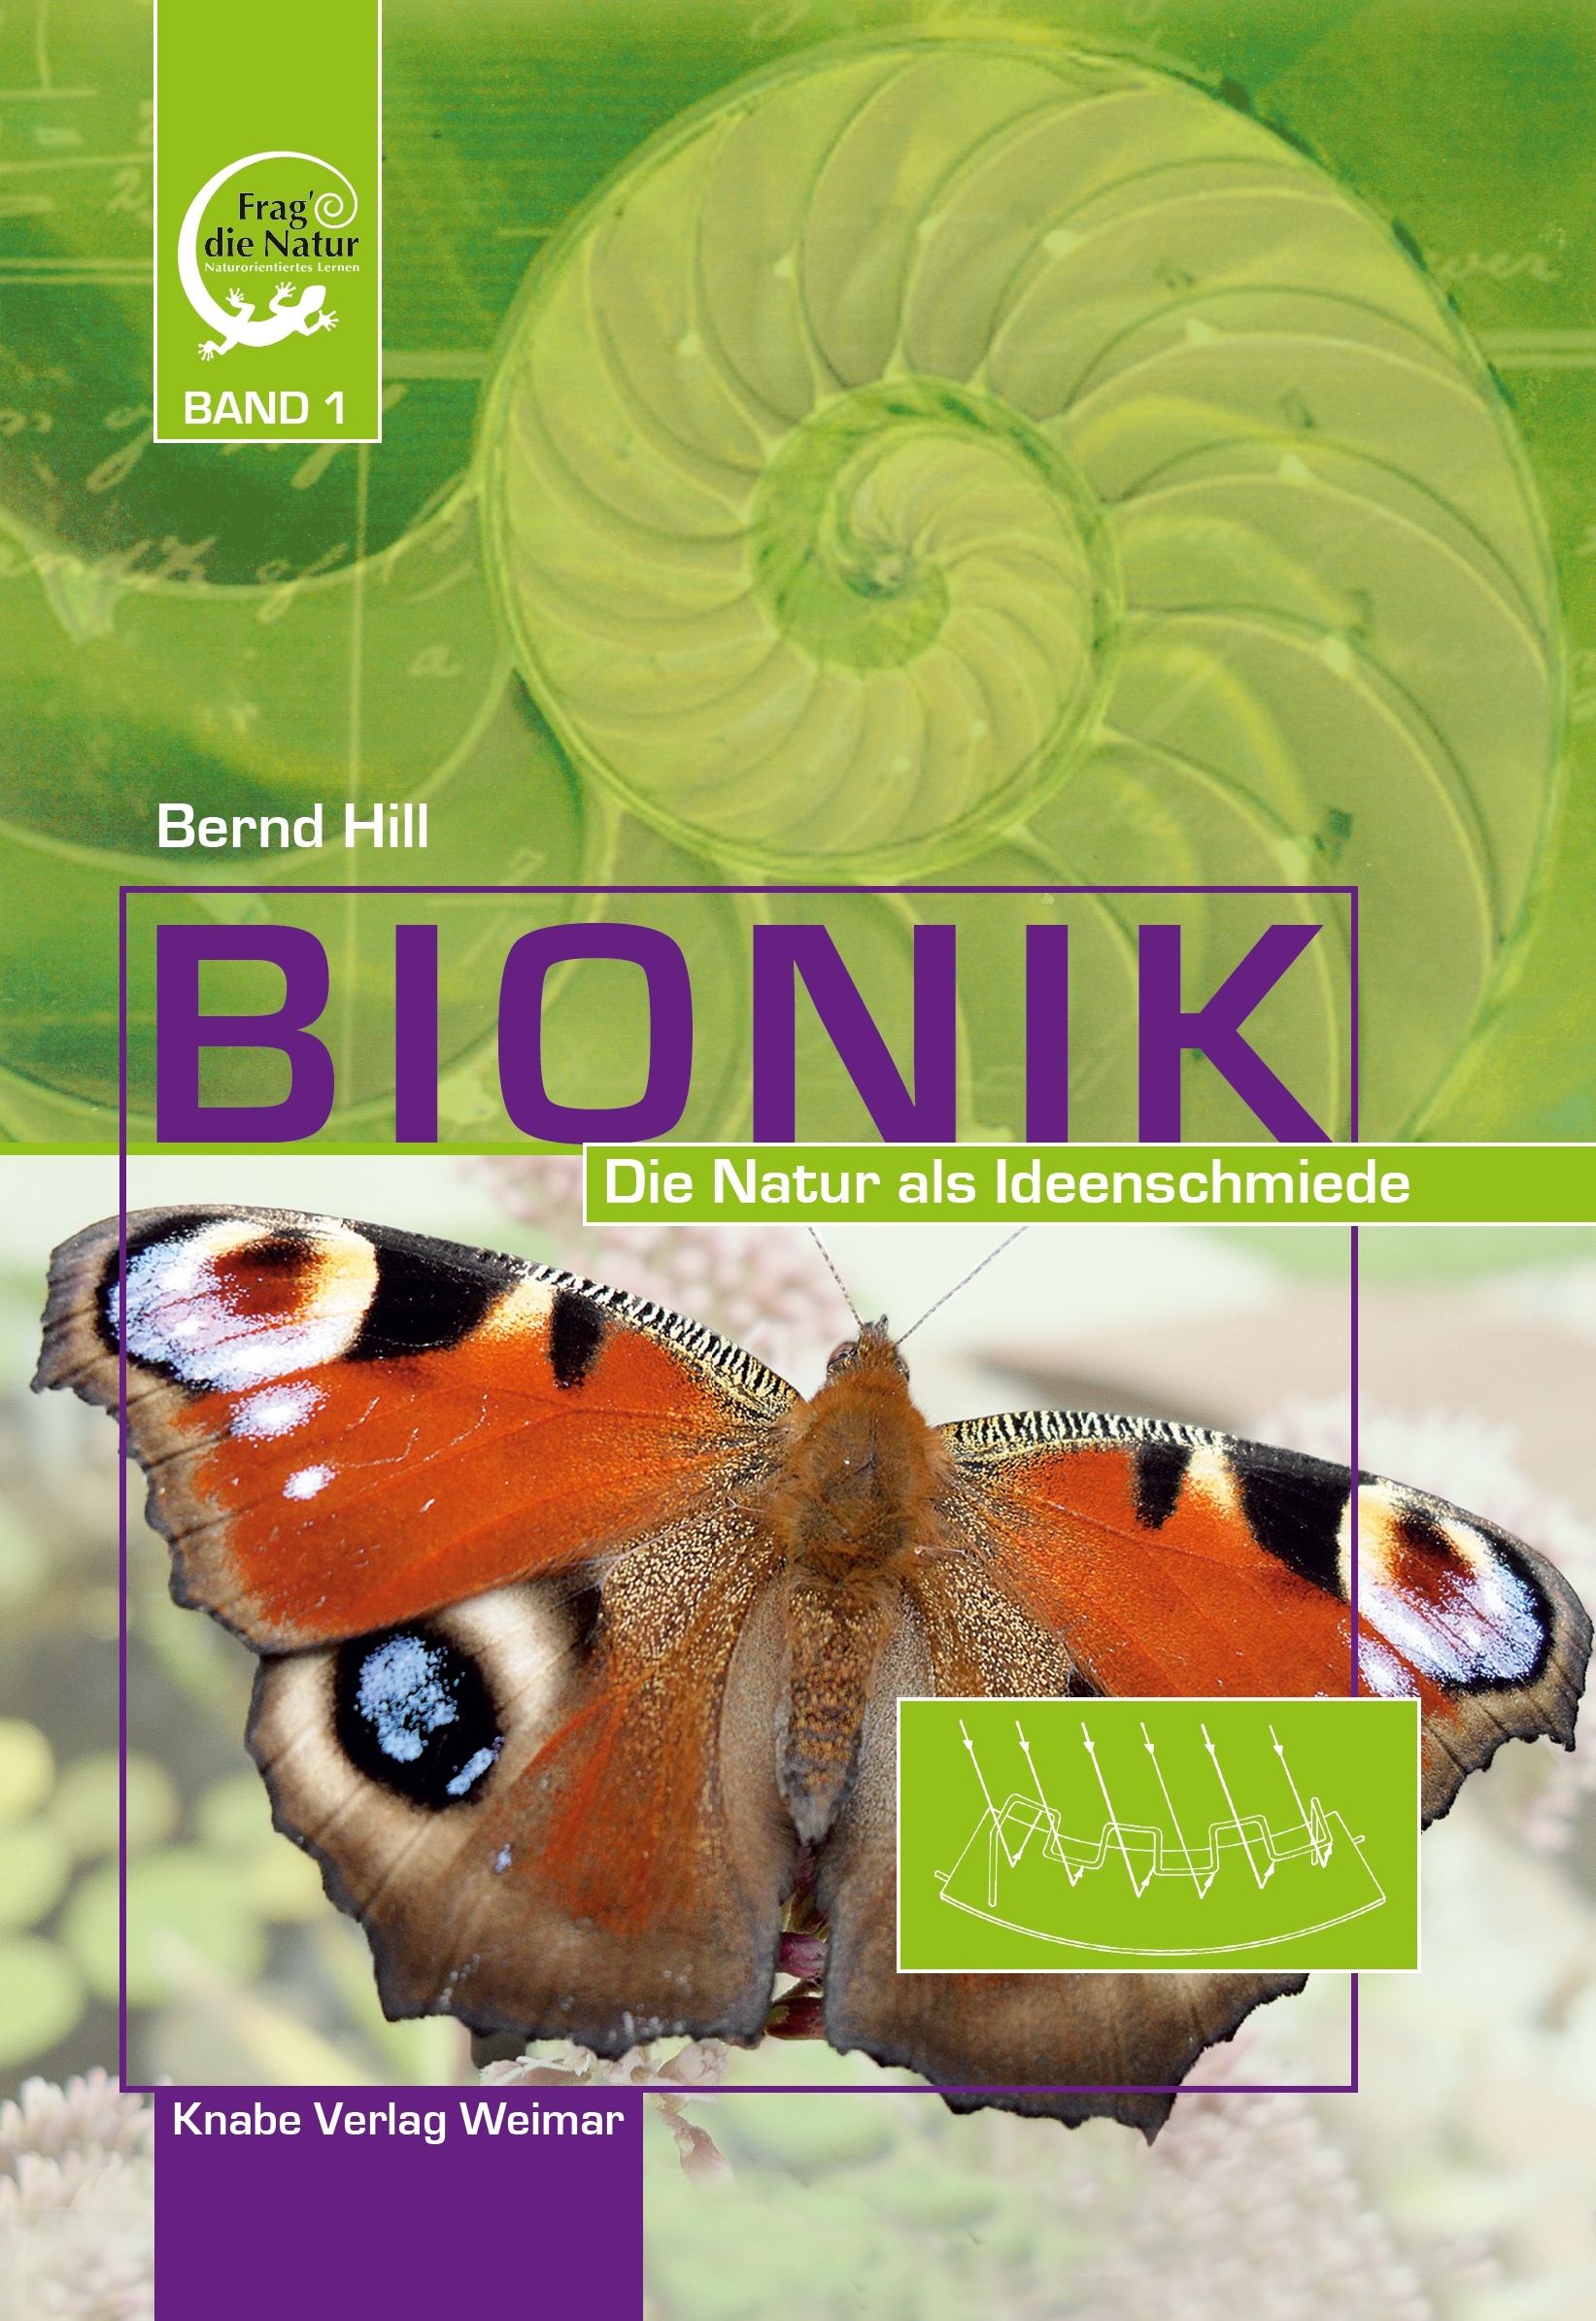 Bionik I – Die Natur als Ideenschmiede